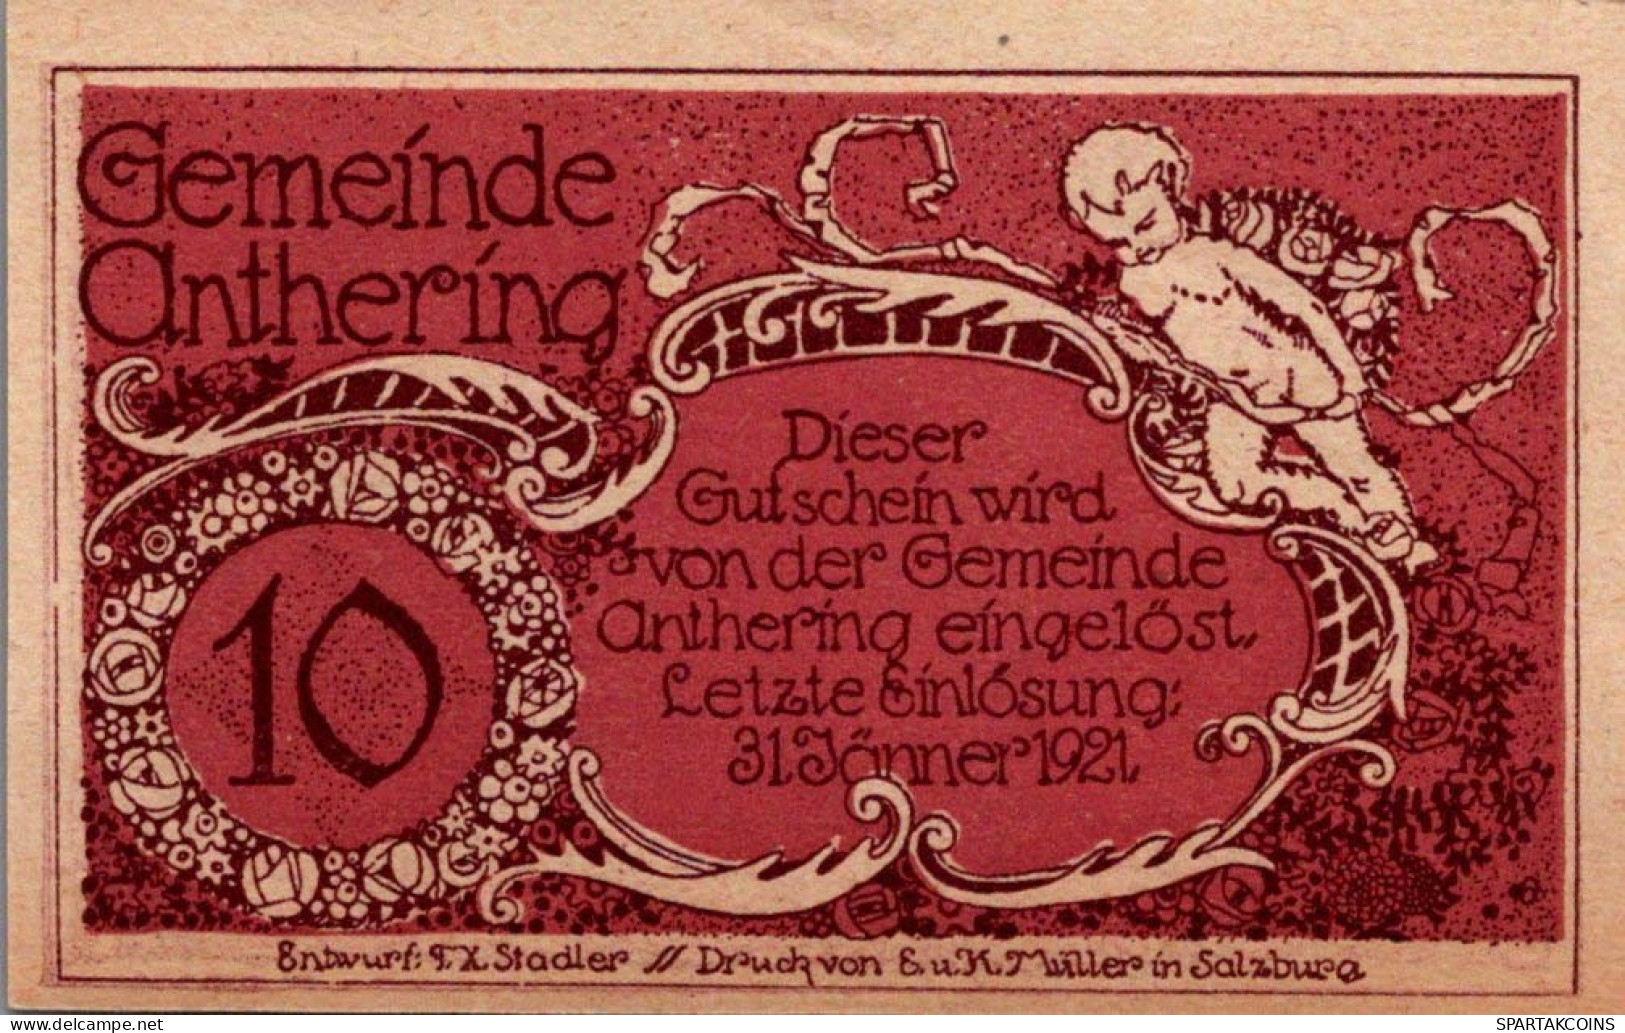 10 HELLER 1920 Stadt ASCHBACH Niedrigeren Österreich Notgeld Banknote #PF338 - [11] Local Banknote Issues